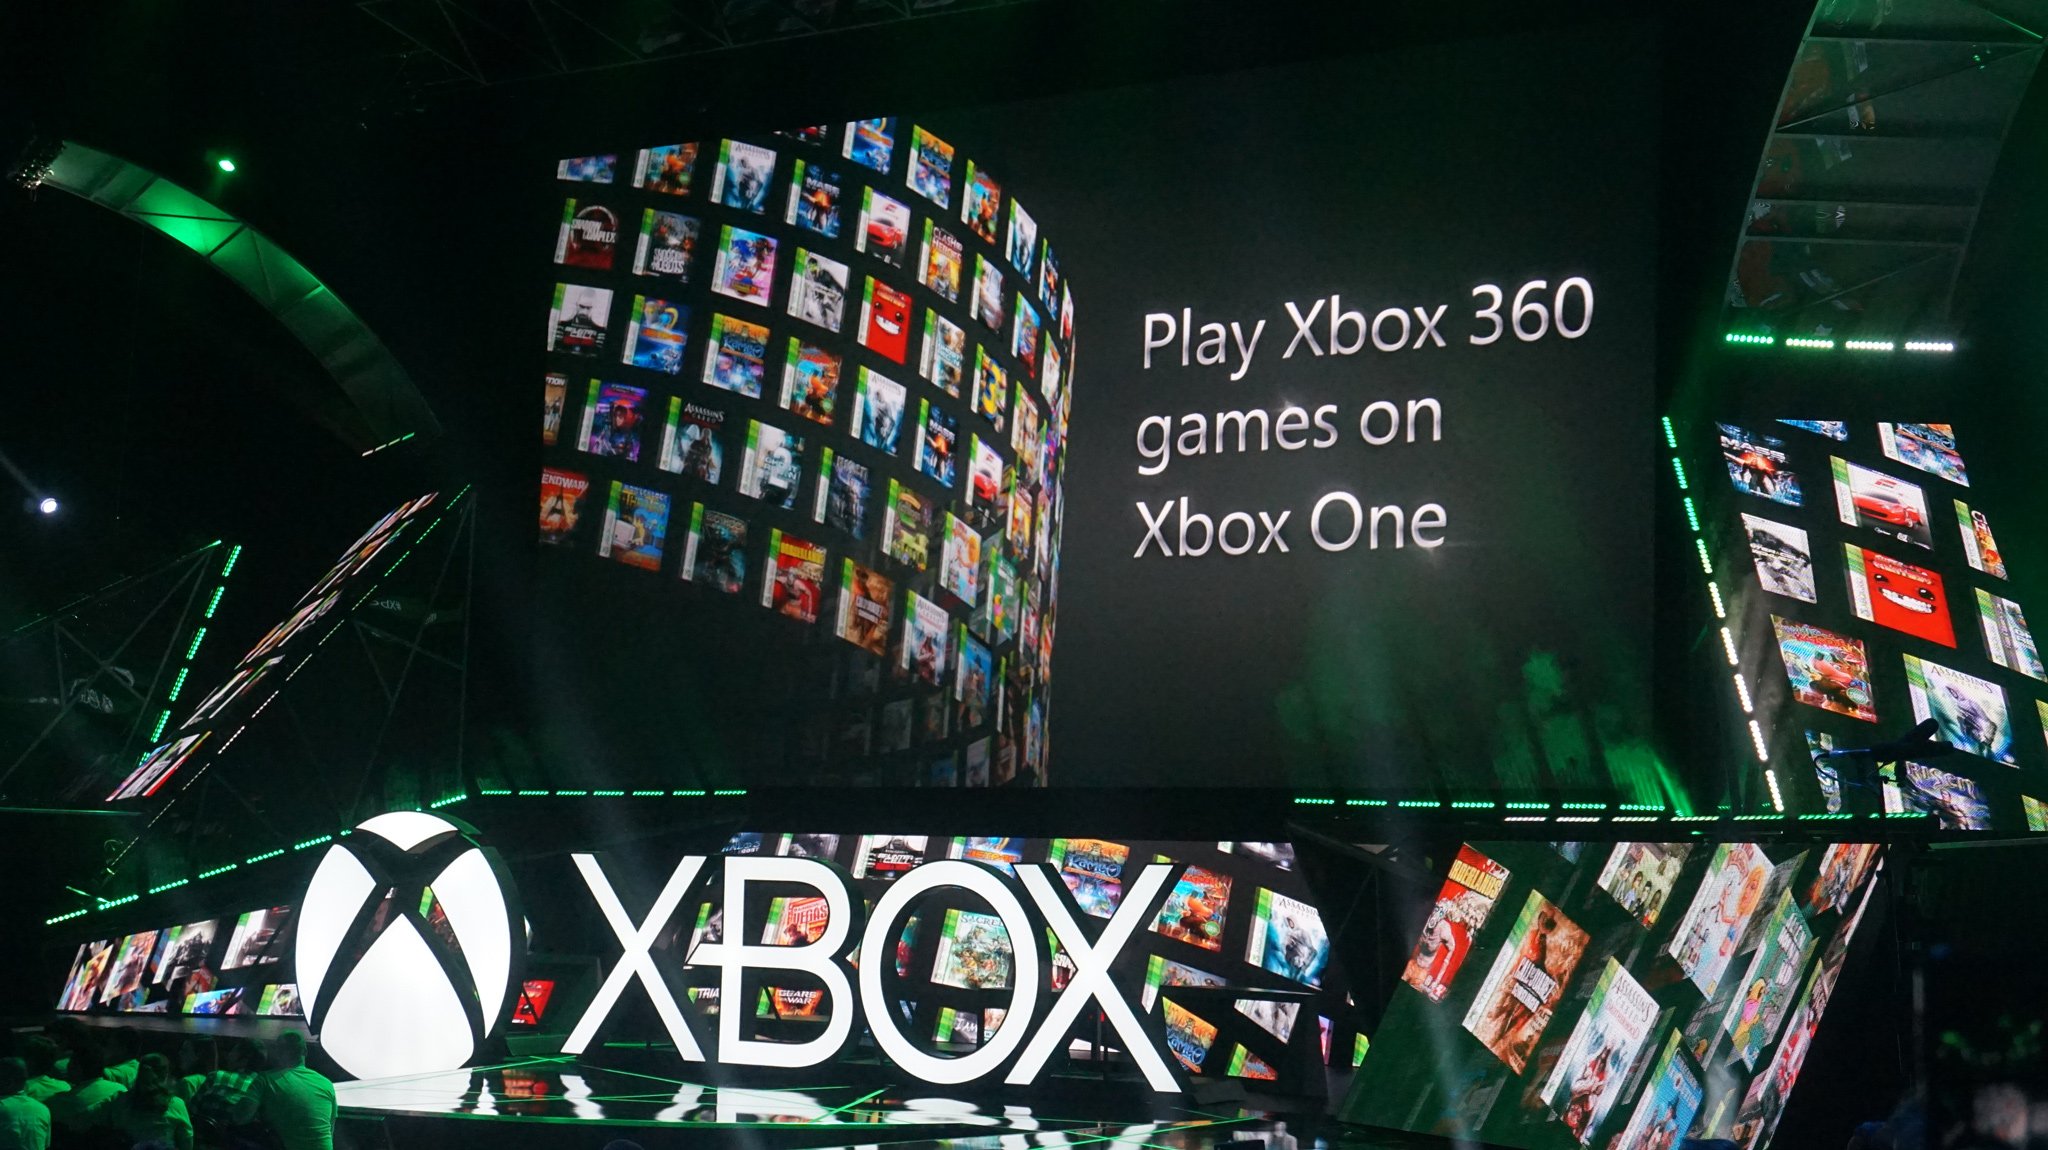 Microsoft'un Xbox 360 geriye dönük uyumluluk programı, platformun en iyi özelliklerinden biri olmaya devam ediyor. 